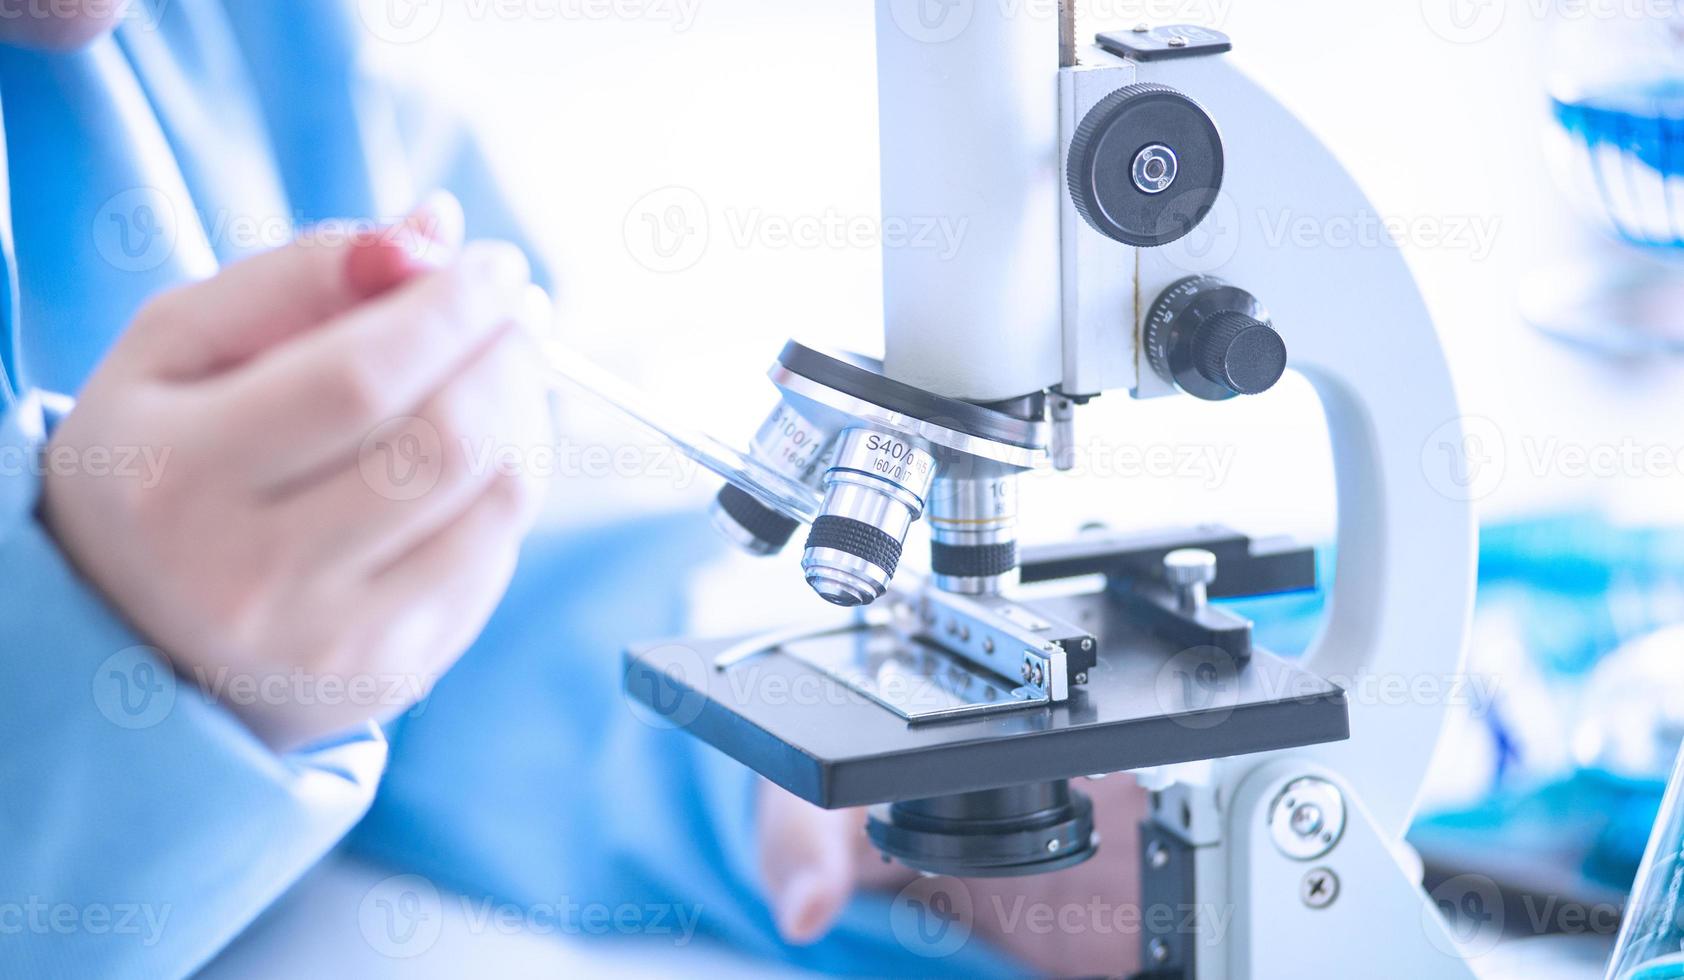 asiatische wissenschaftlerin, forscherin, technikerin oder studentin führte forschungen oder experimente mit mikroskopen durch, die wissenschaftliche geräte in medizinischen, chemischen oder biologischen labors sind foto